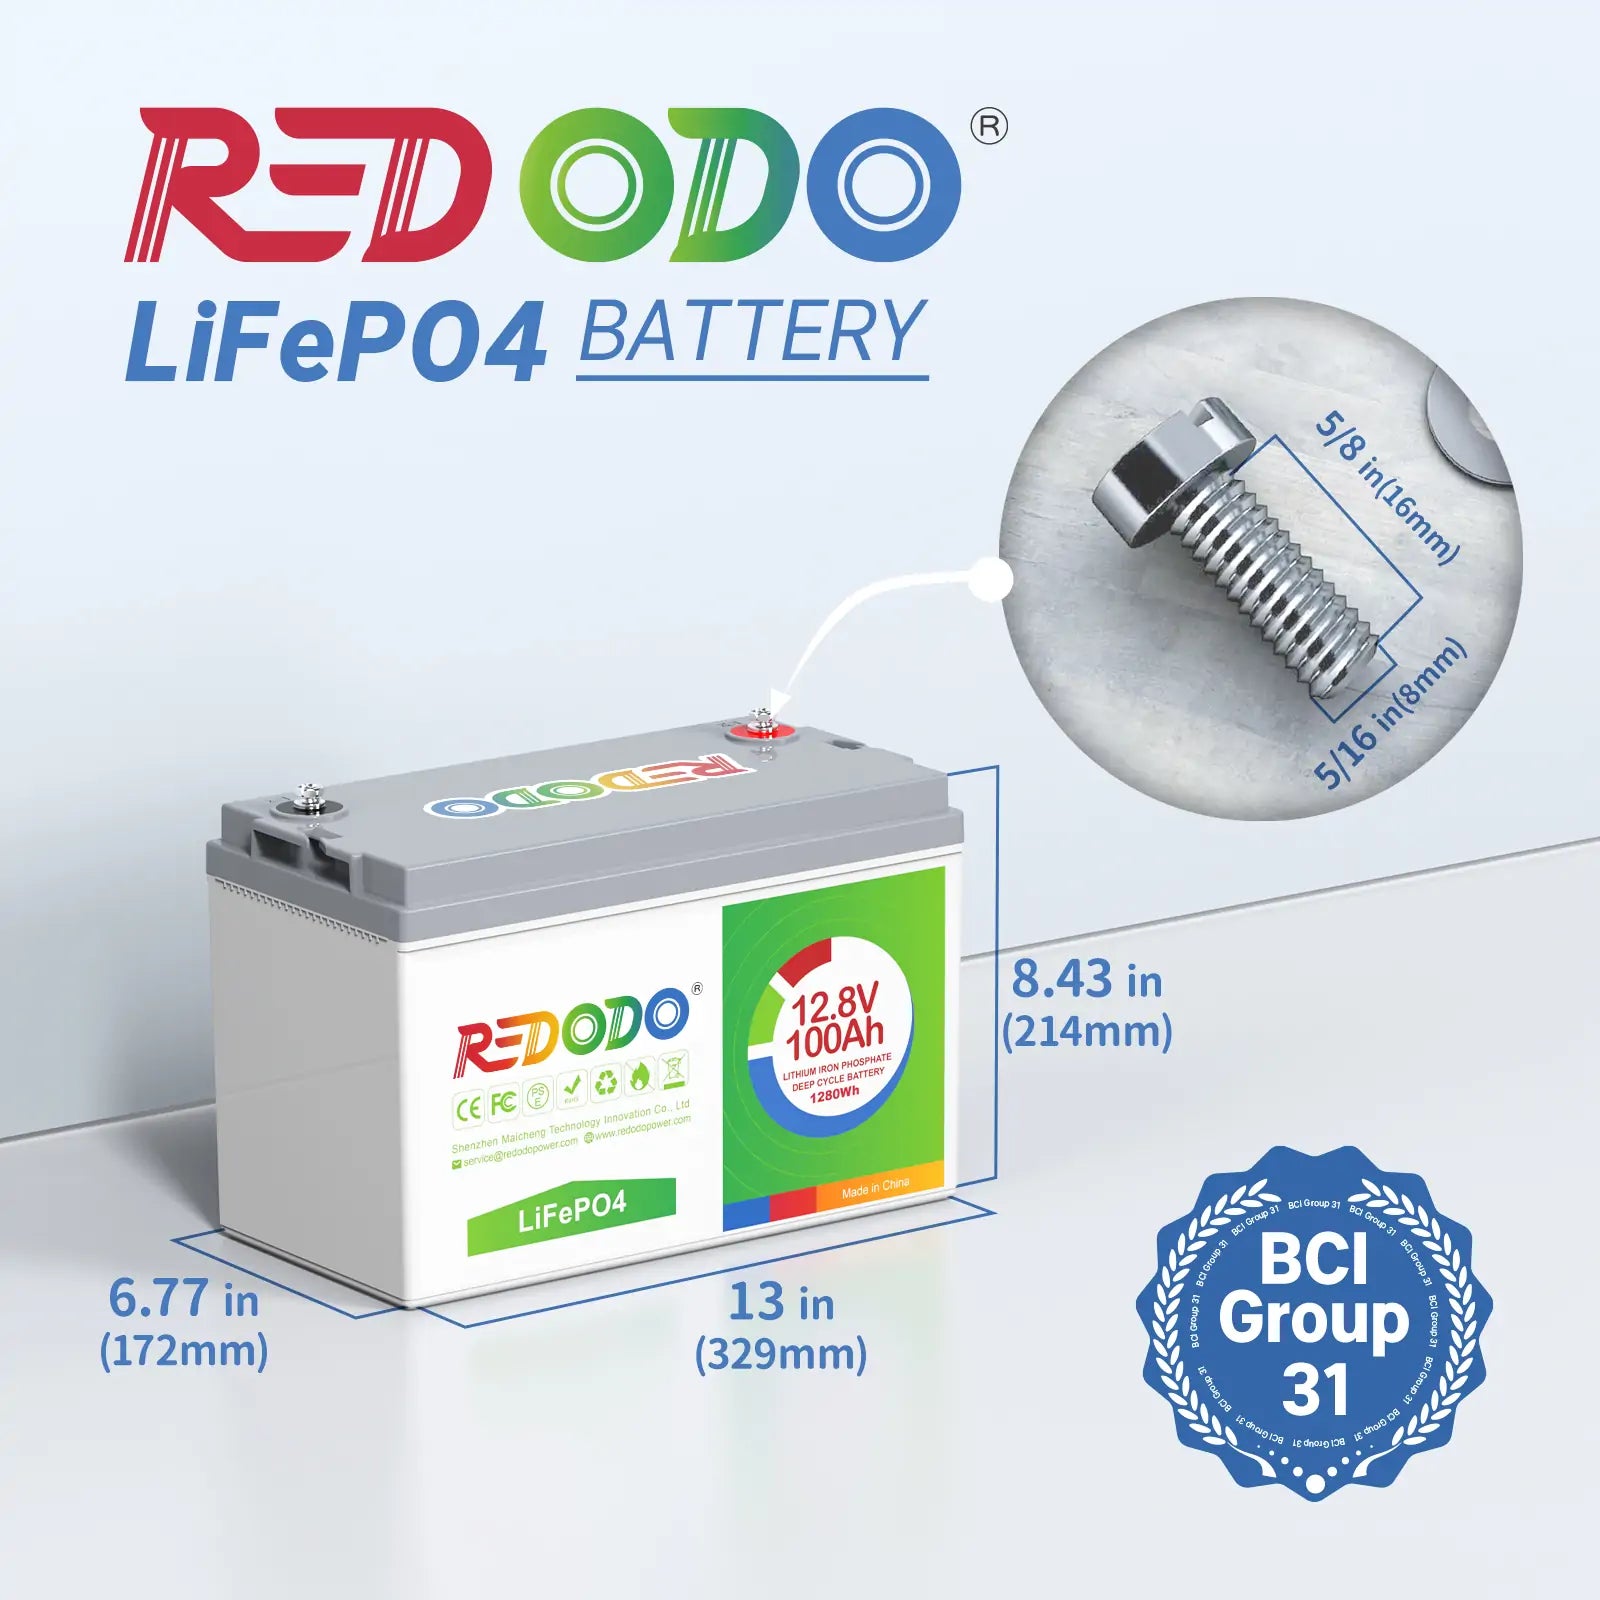 Redodo 29.2V 20A LiFePO4 Battery Charger - Redodo Power